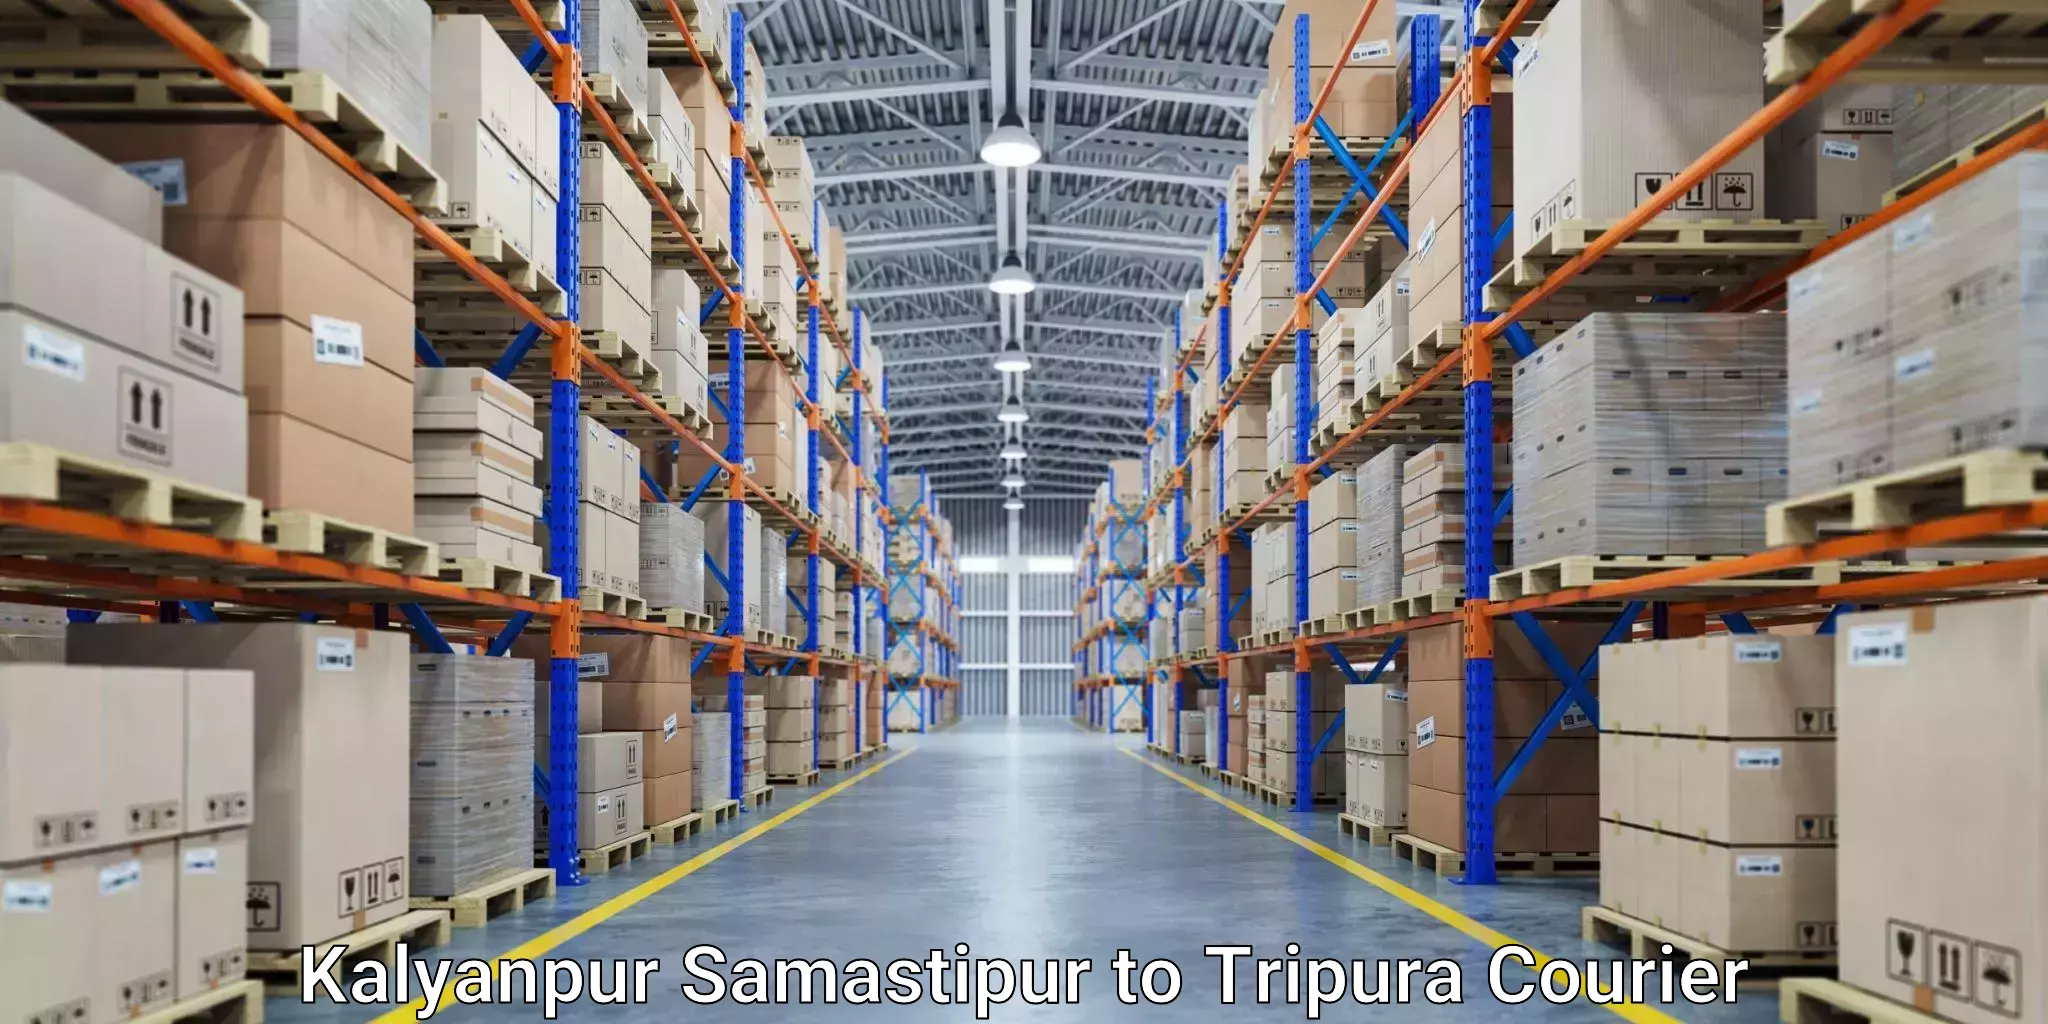 Professional courier handling Kalyanpur Samastipur to Tripura